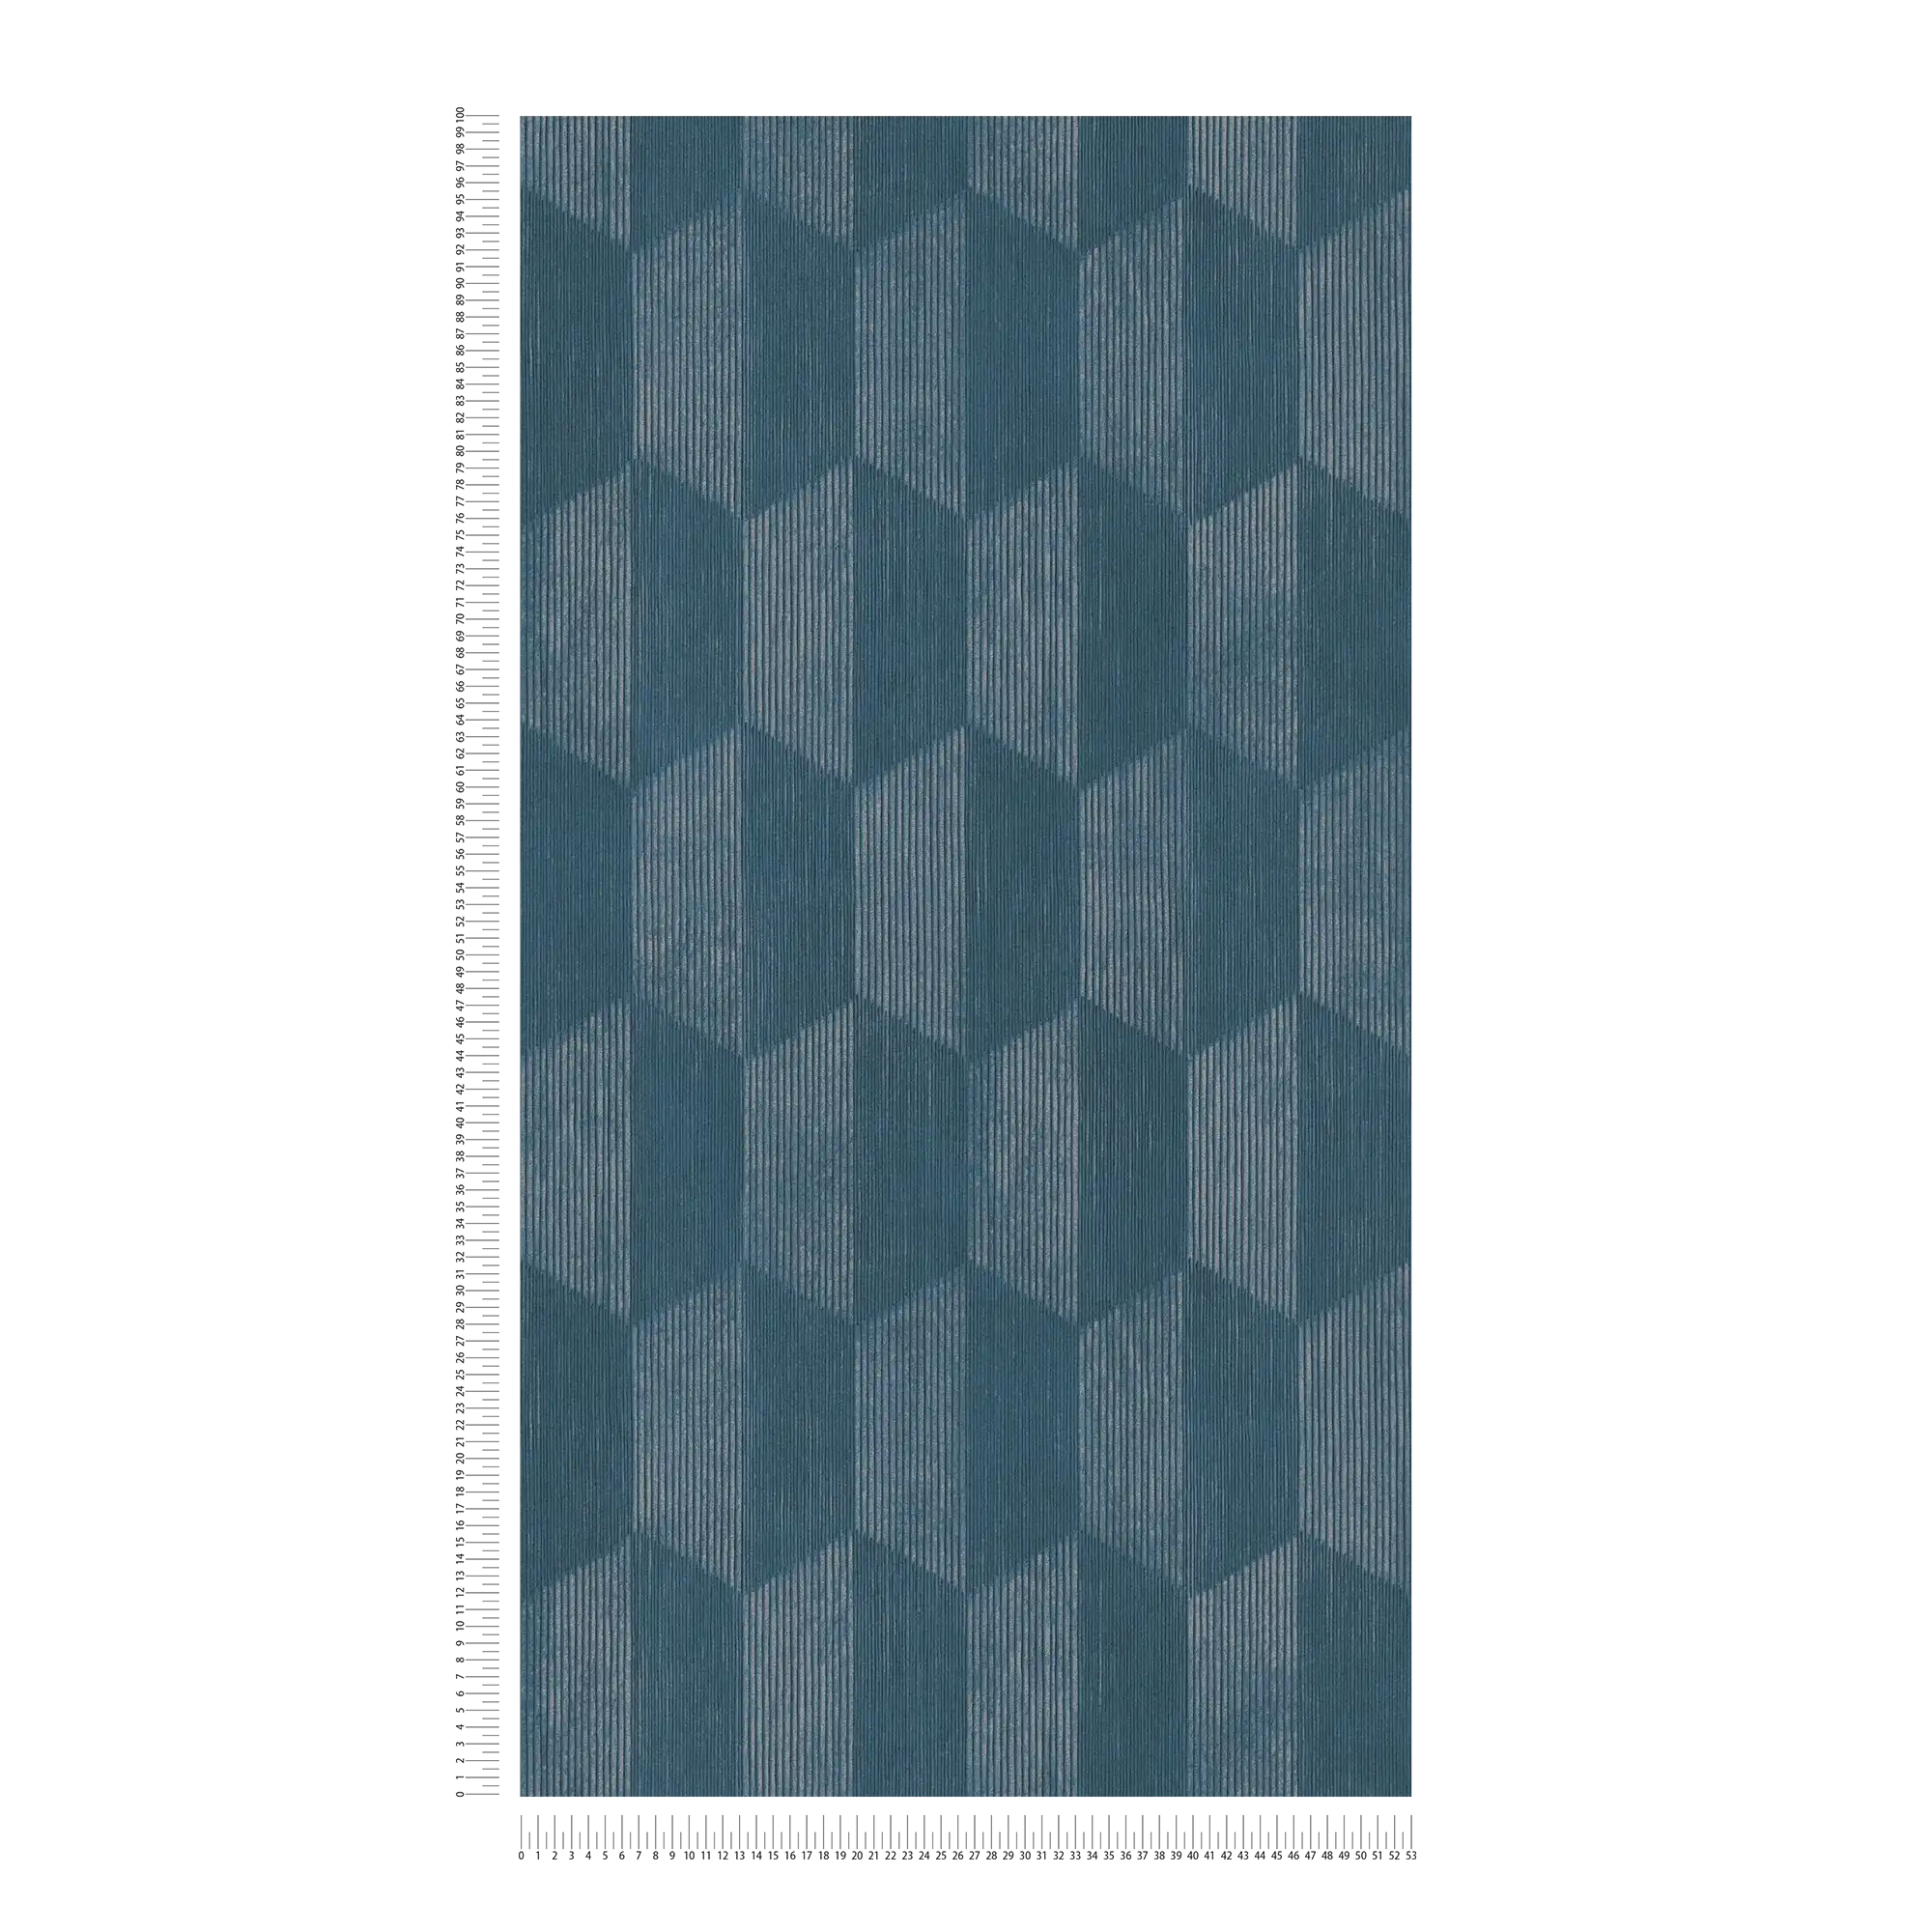             behang 3D patroon met grafisch facet design - blauw
        